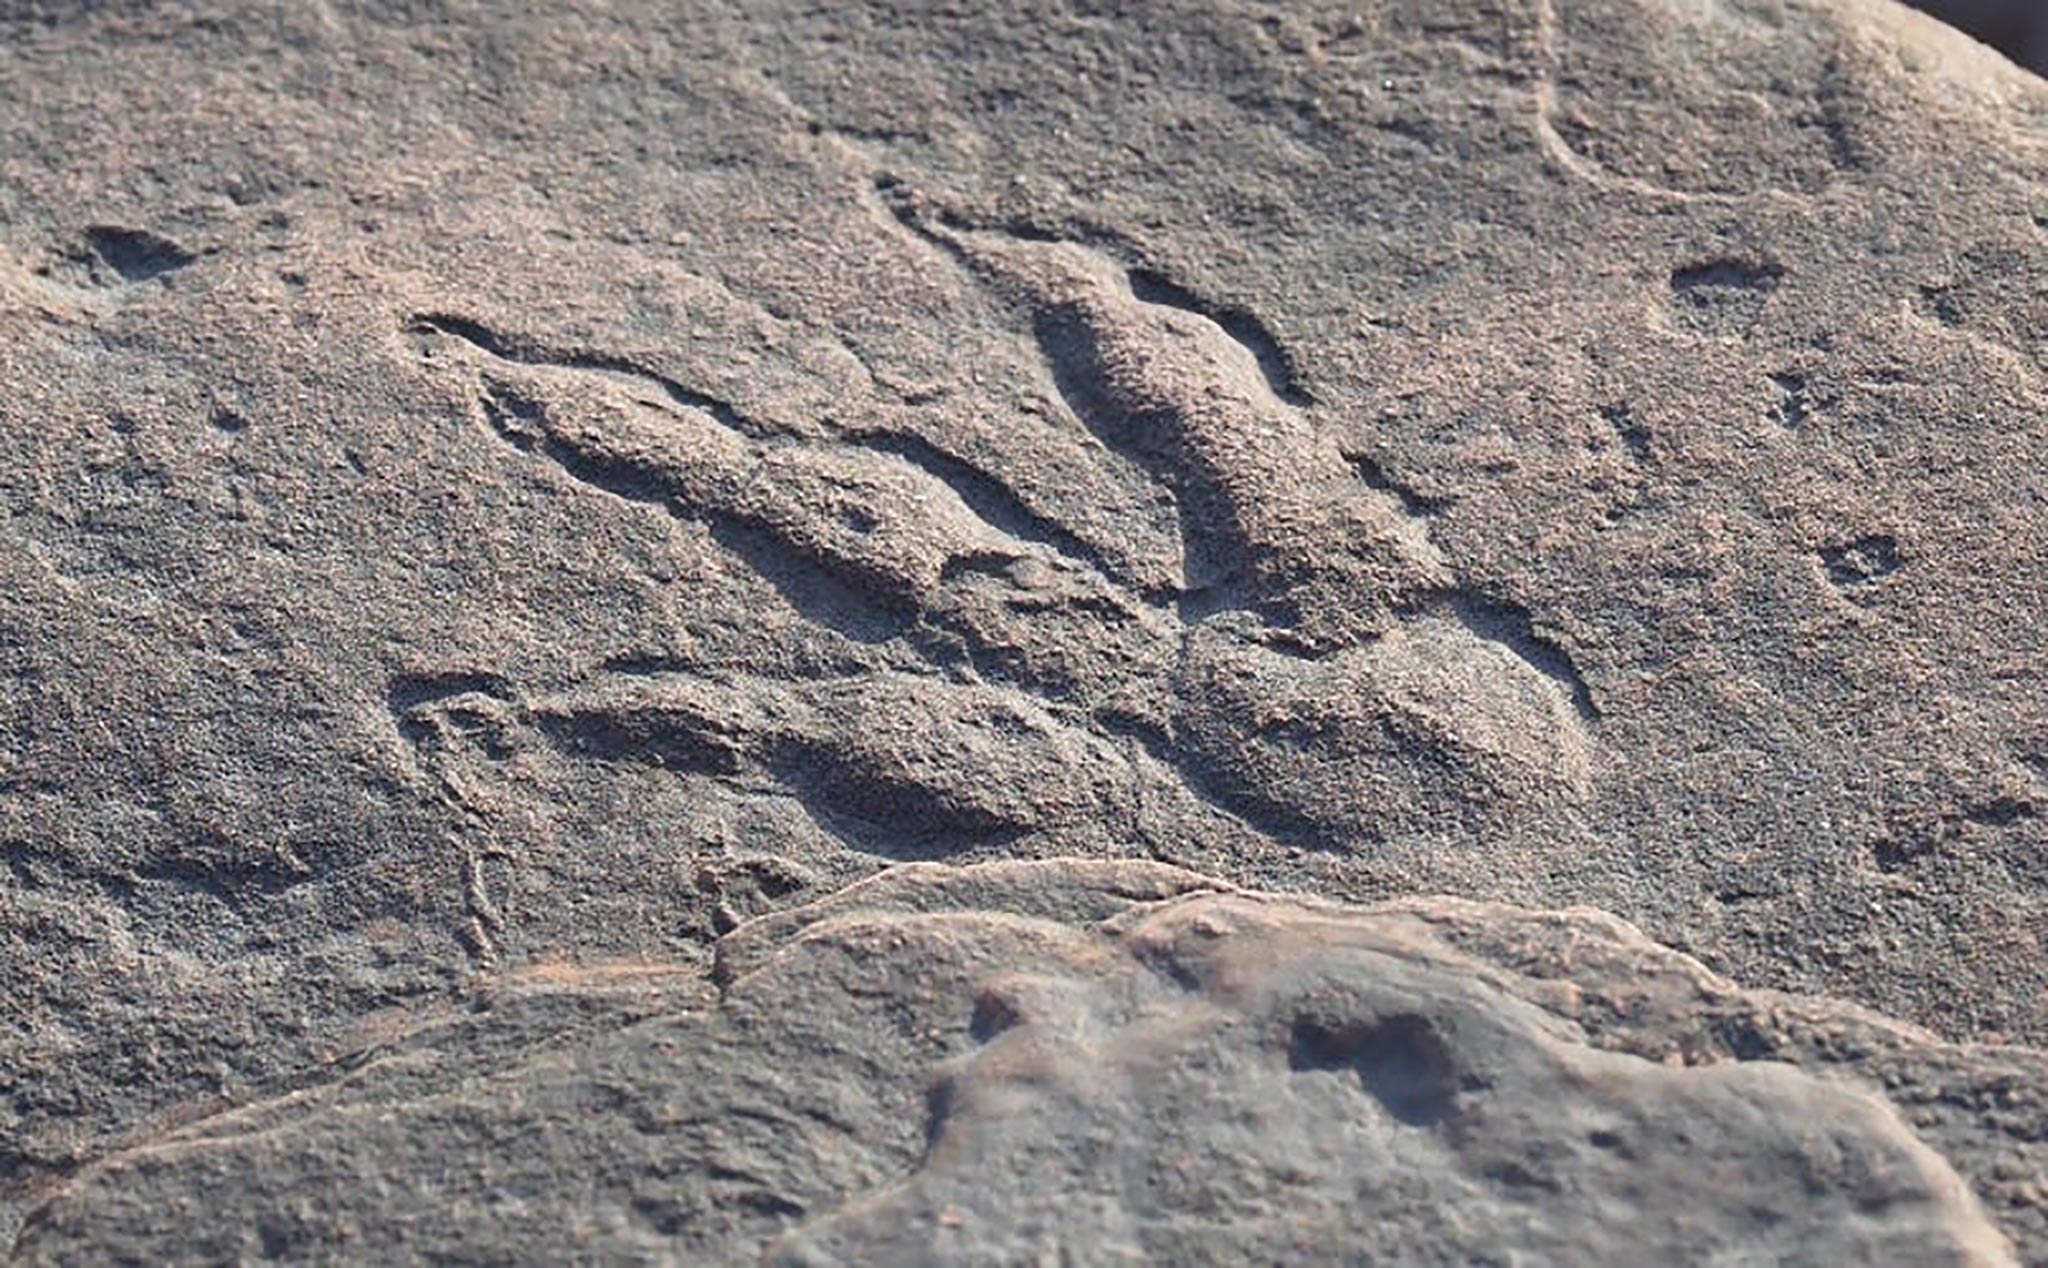 Bé gái 4 tuổi tìm thấy dấu chân khủng long nguyên vẹn trên bãi biển xứ Wales